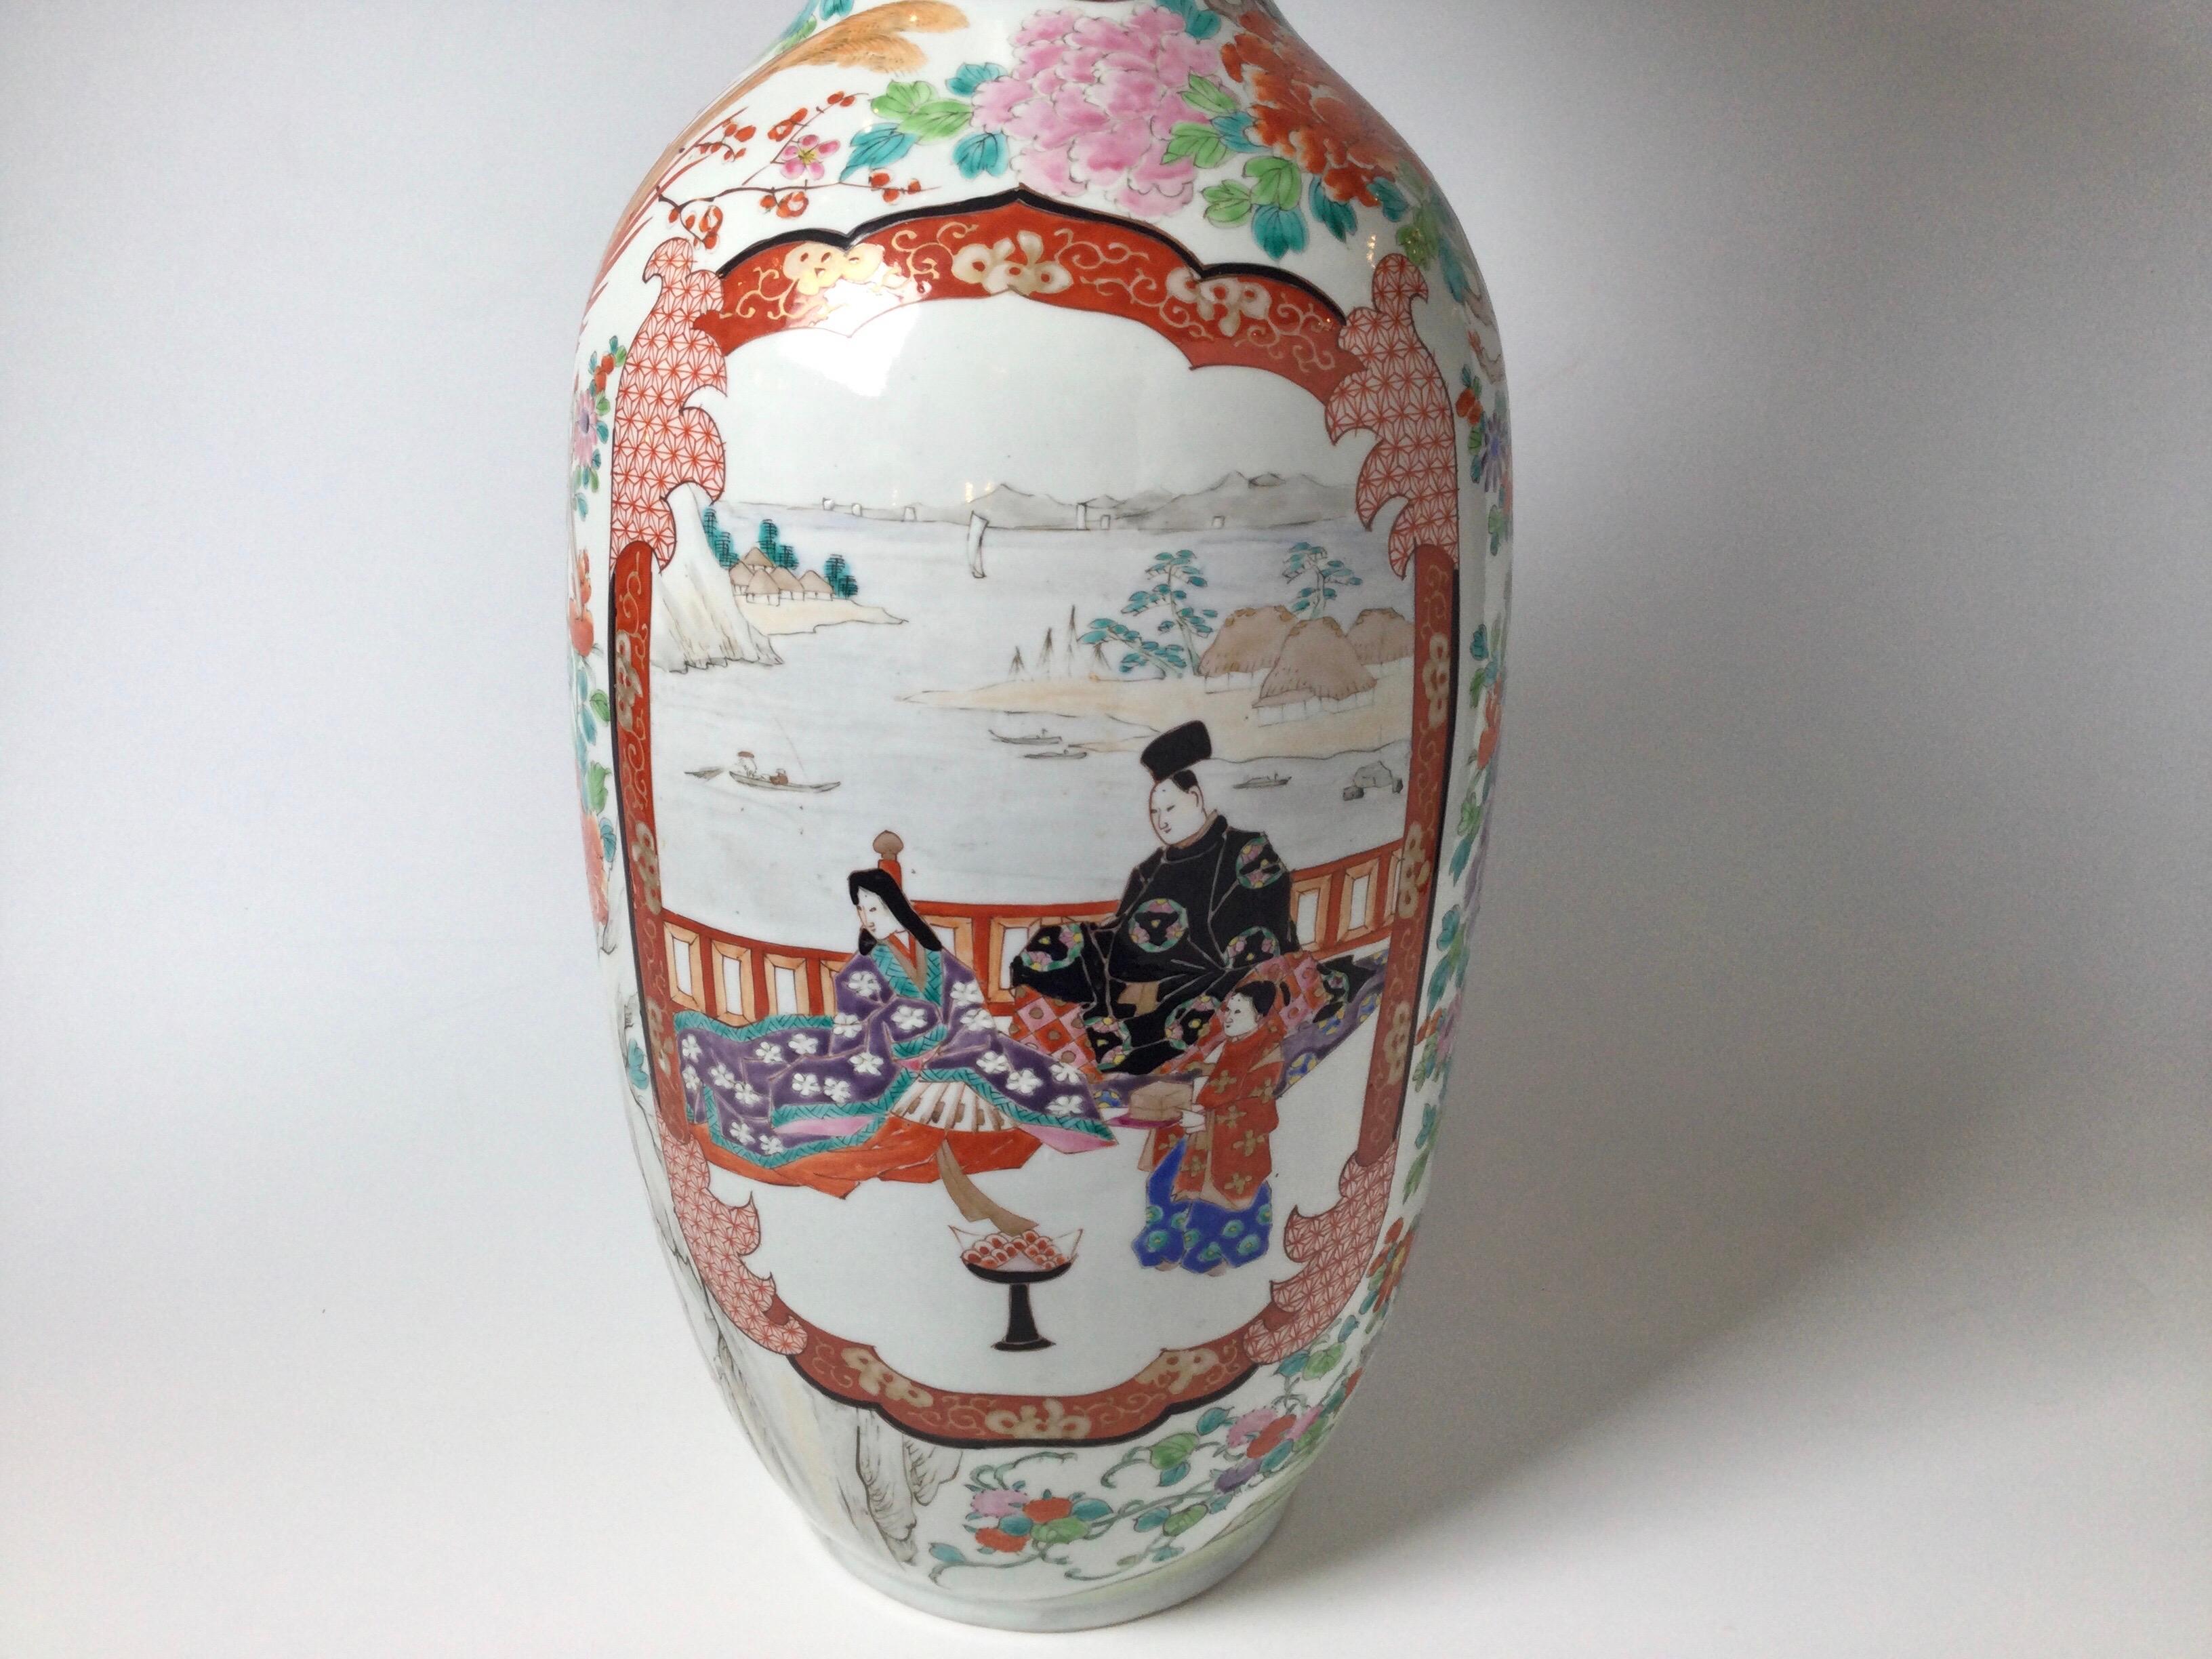 Elegante handbemalte japanische Porzellan Kutani Vase, 25,5 cm hoch mit zarten und knackigen handgemalten japanischen Szenen mit dem klassischen Eisen rot Akzent Farbe. Die vordere Kartuschen mit aristokratischen Menschen, mit den Seiten der schön